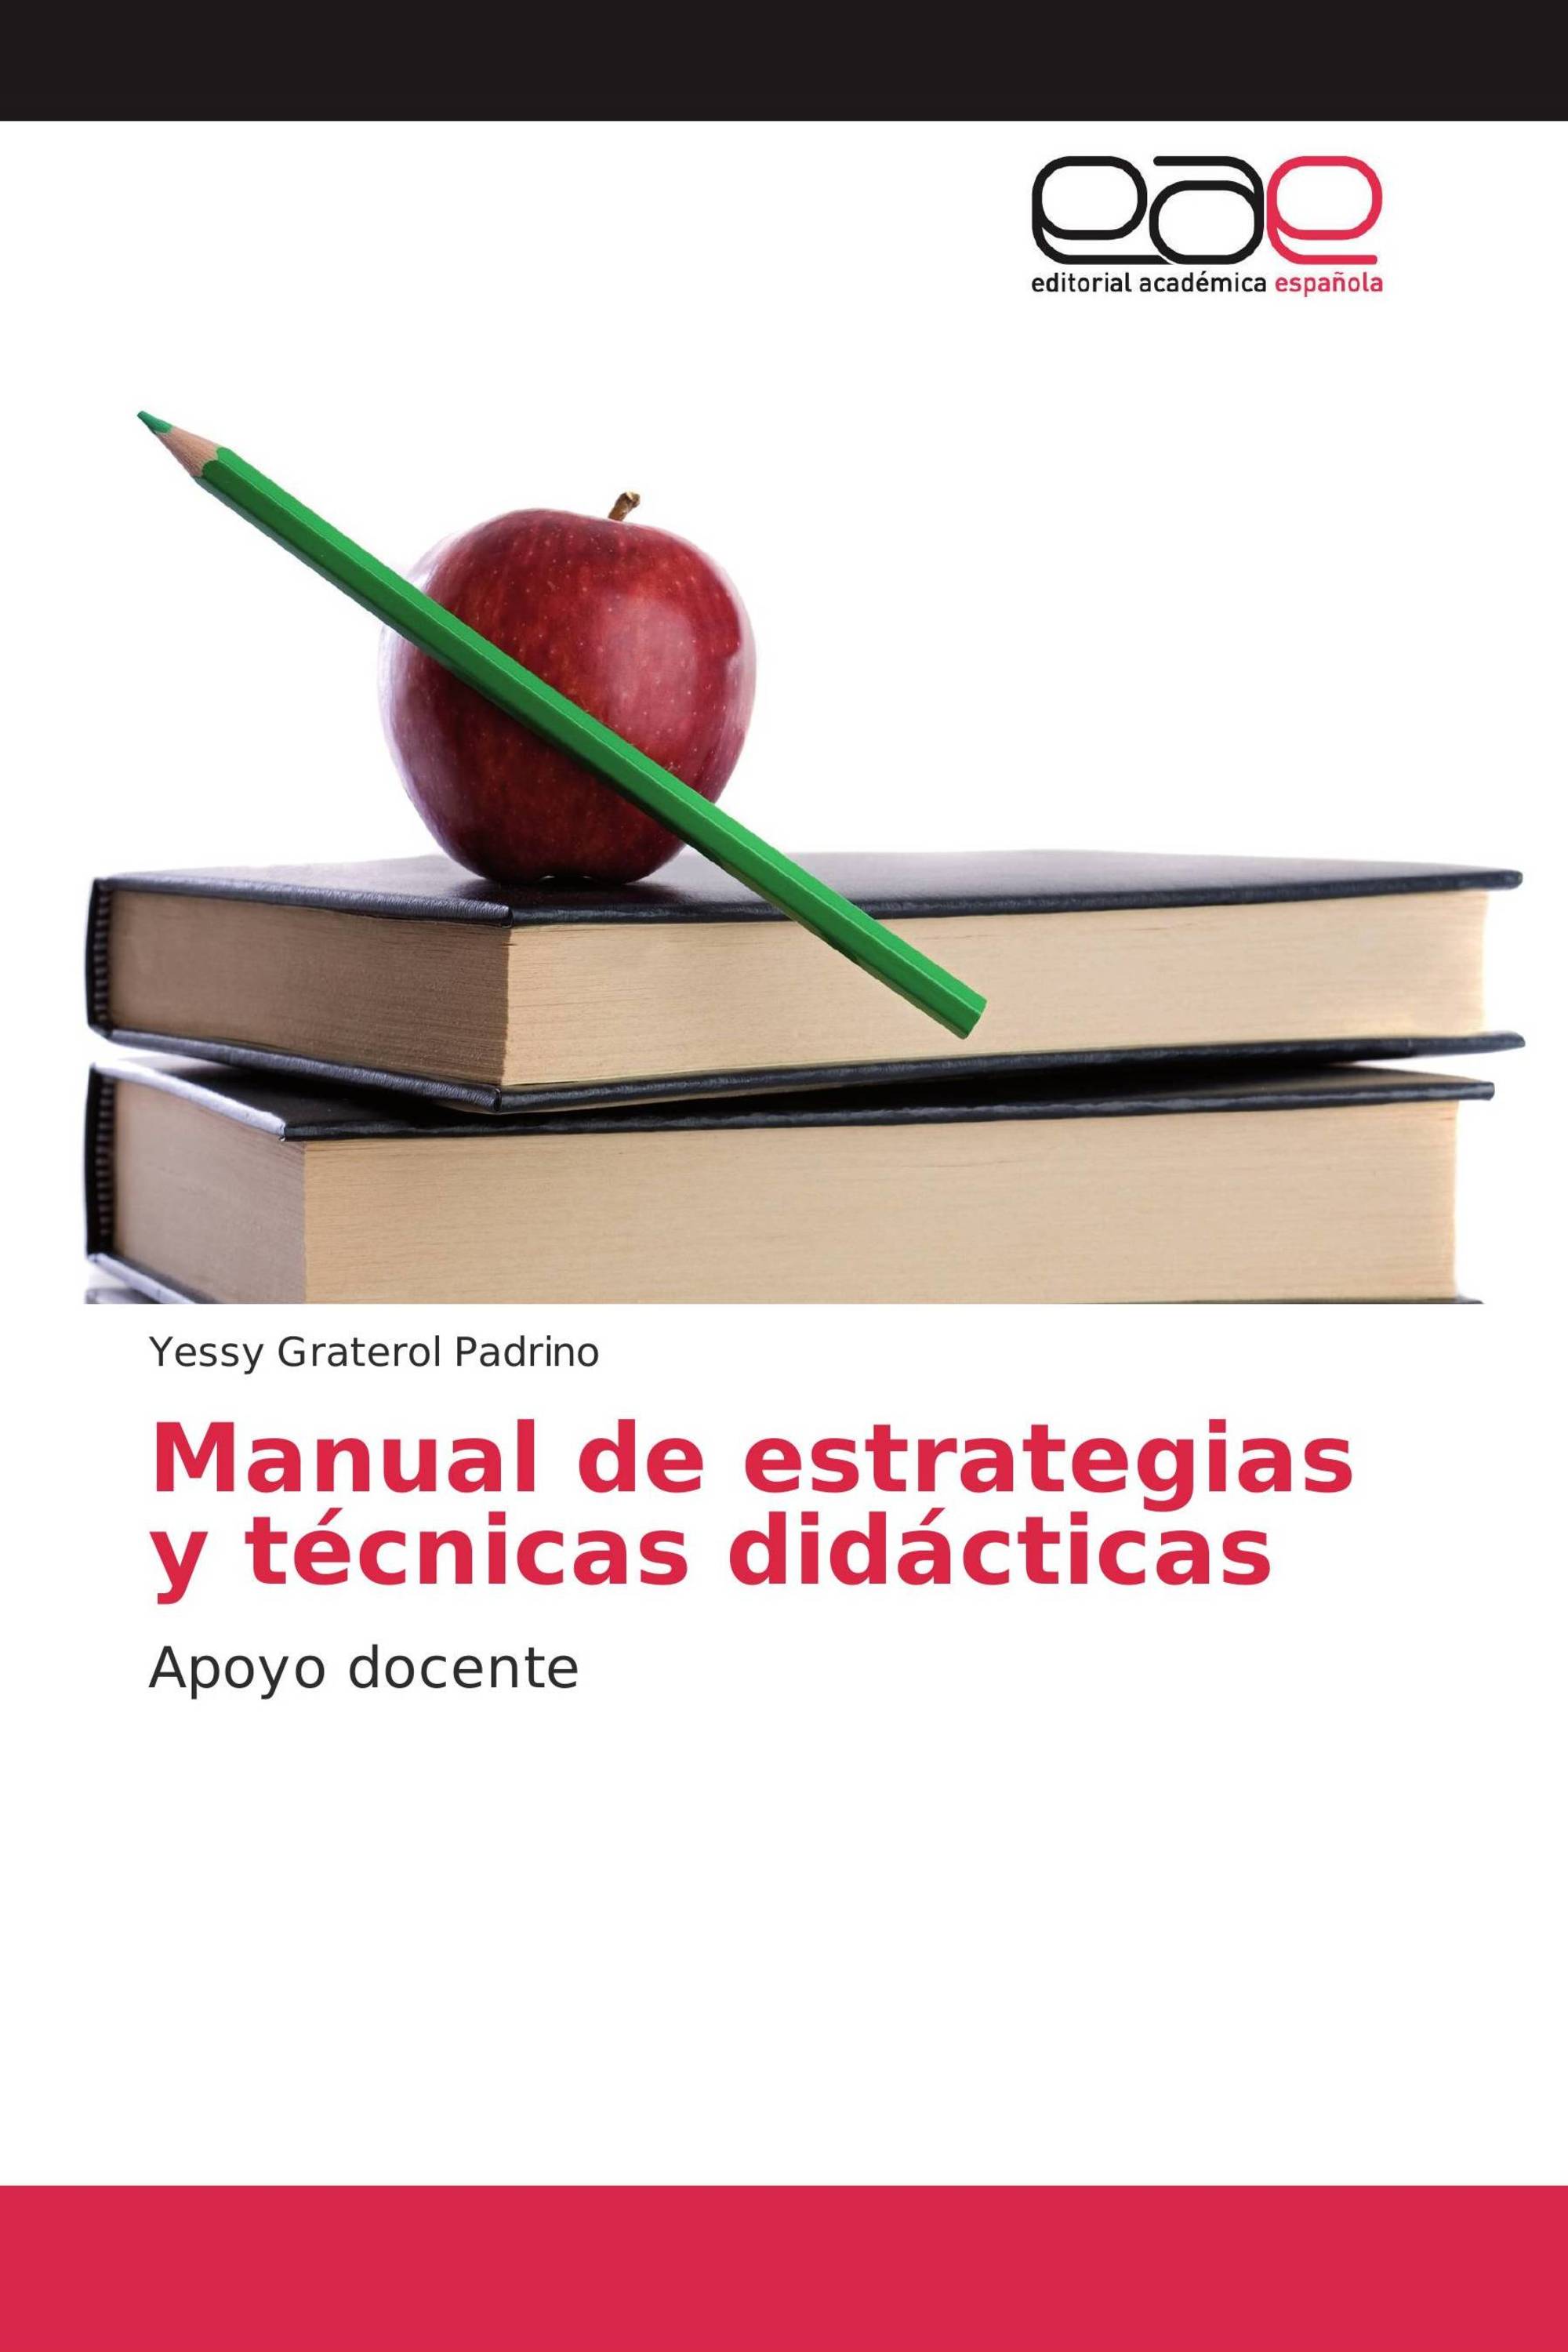 Manual De Estrategias Y Técnicas Didácticas 978 3 639 73372 3 9783639733723 363973372x 2883